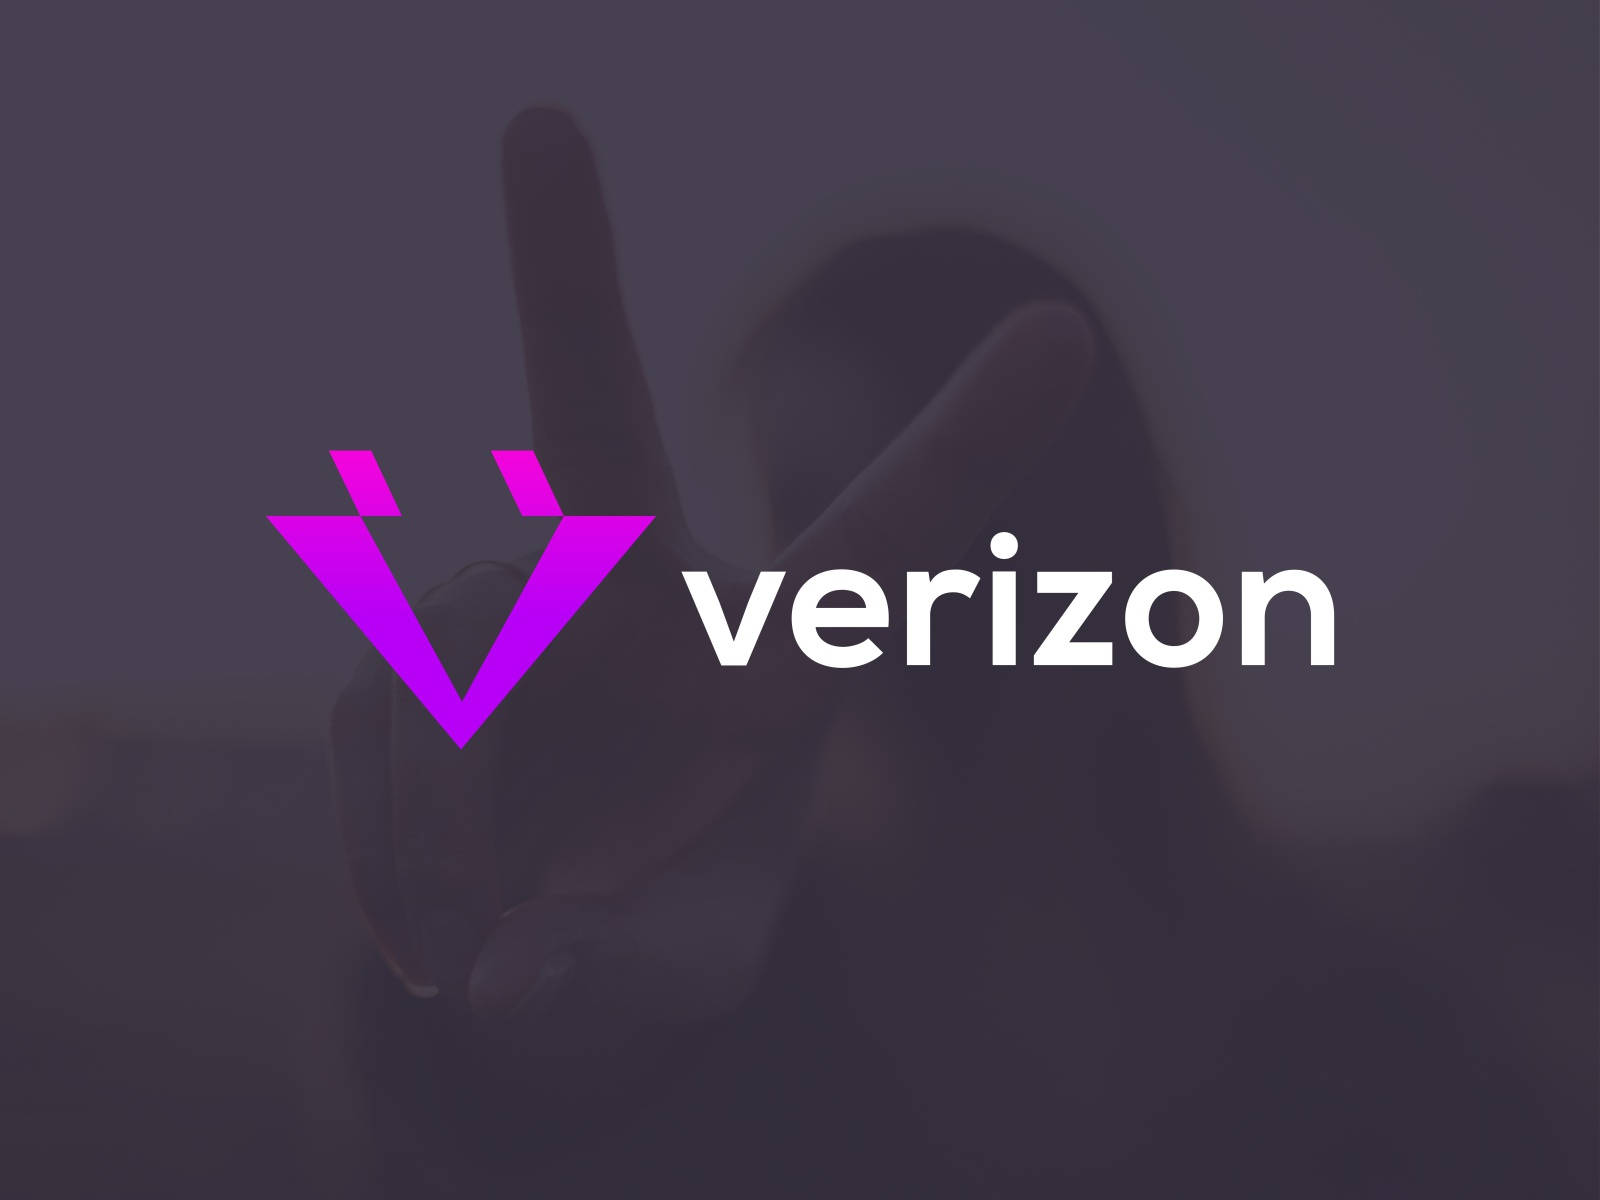 Verizon Purple Design Wallpaper